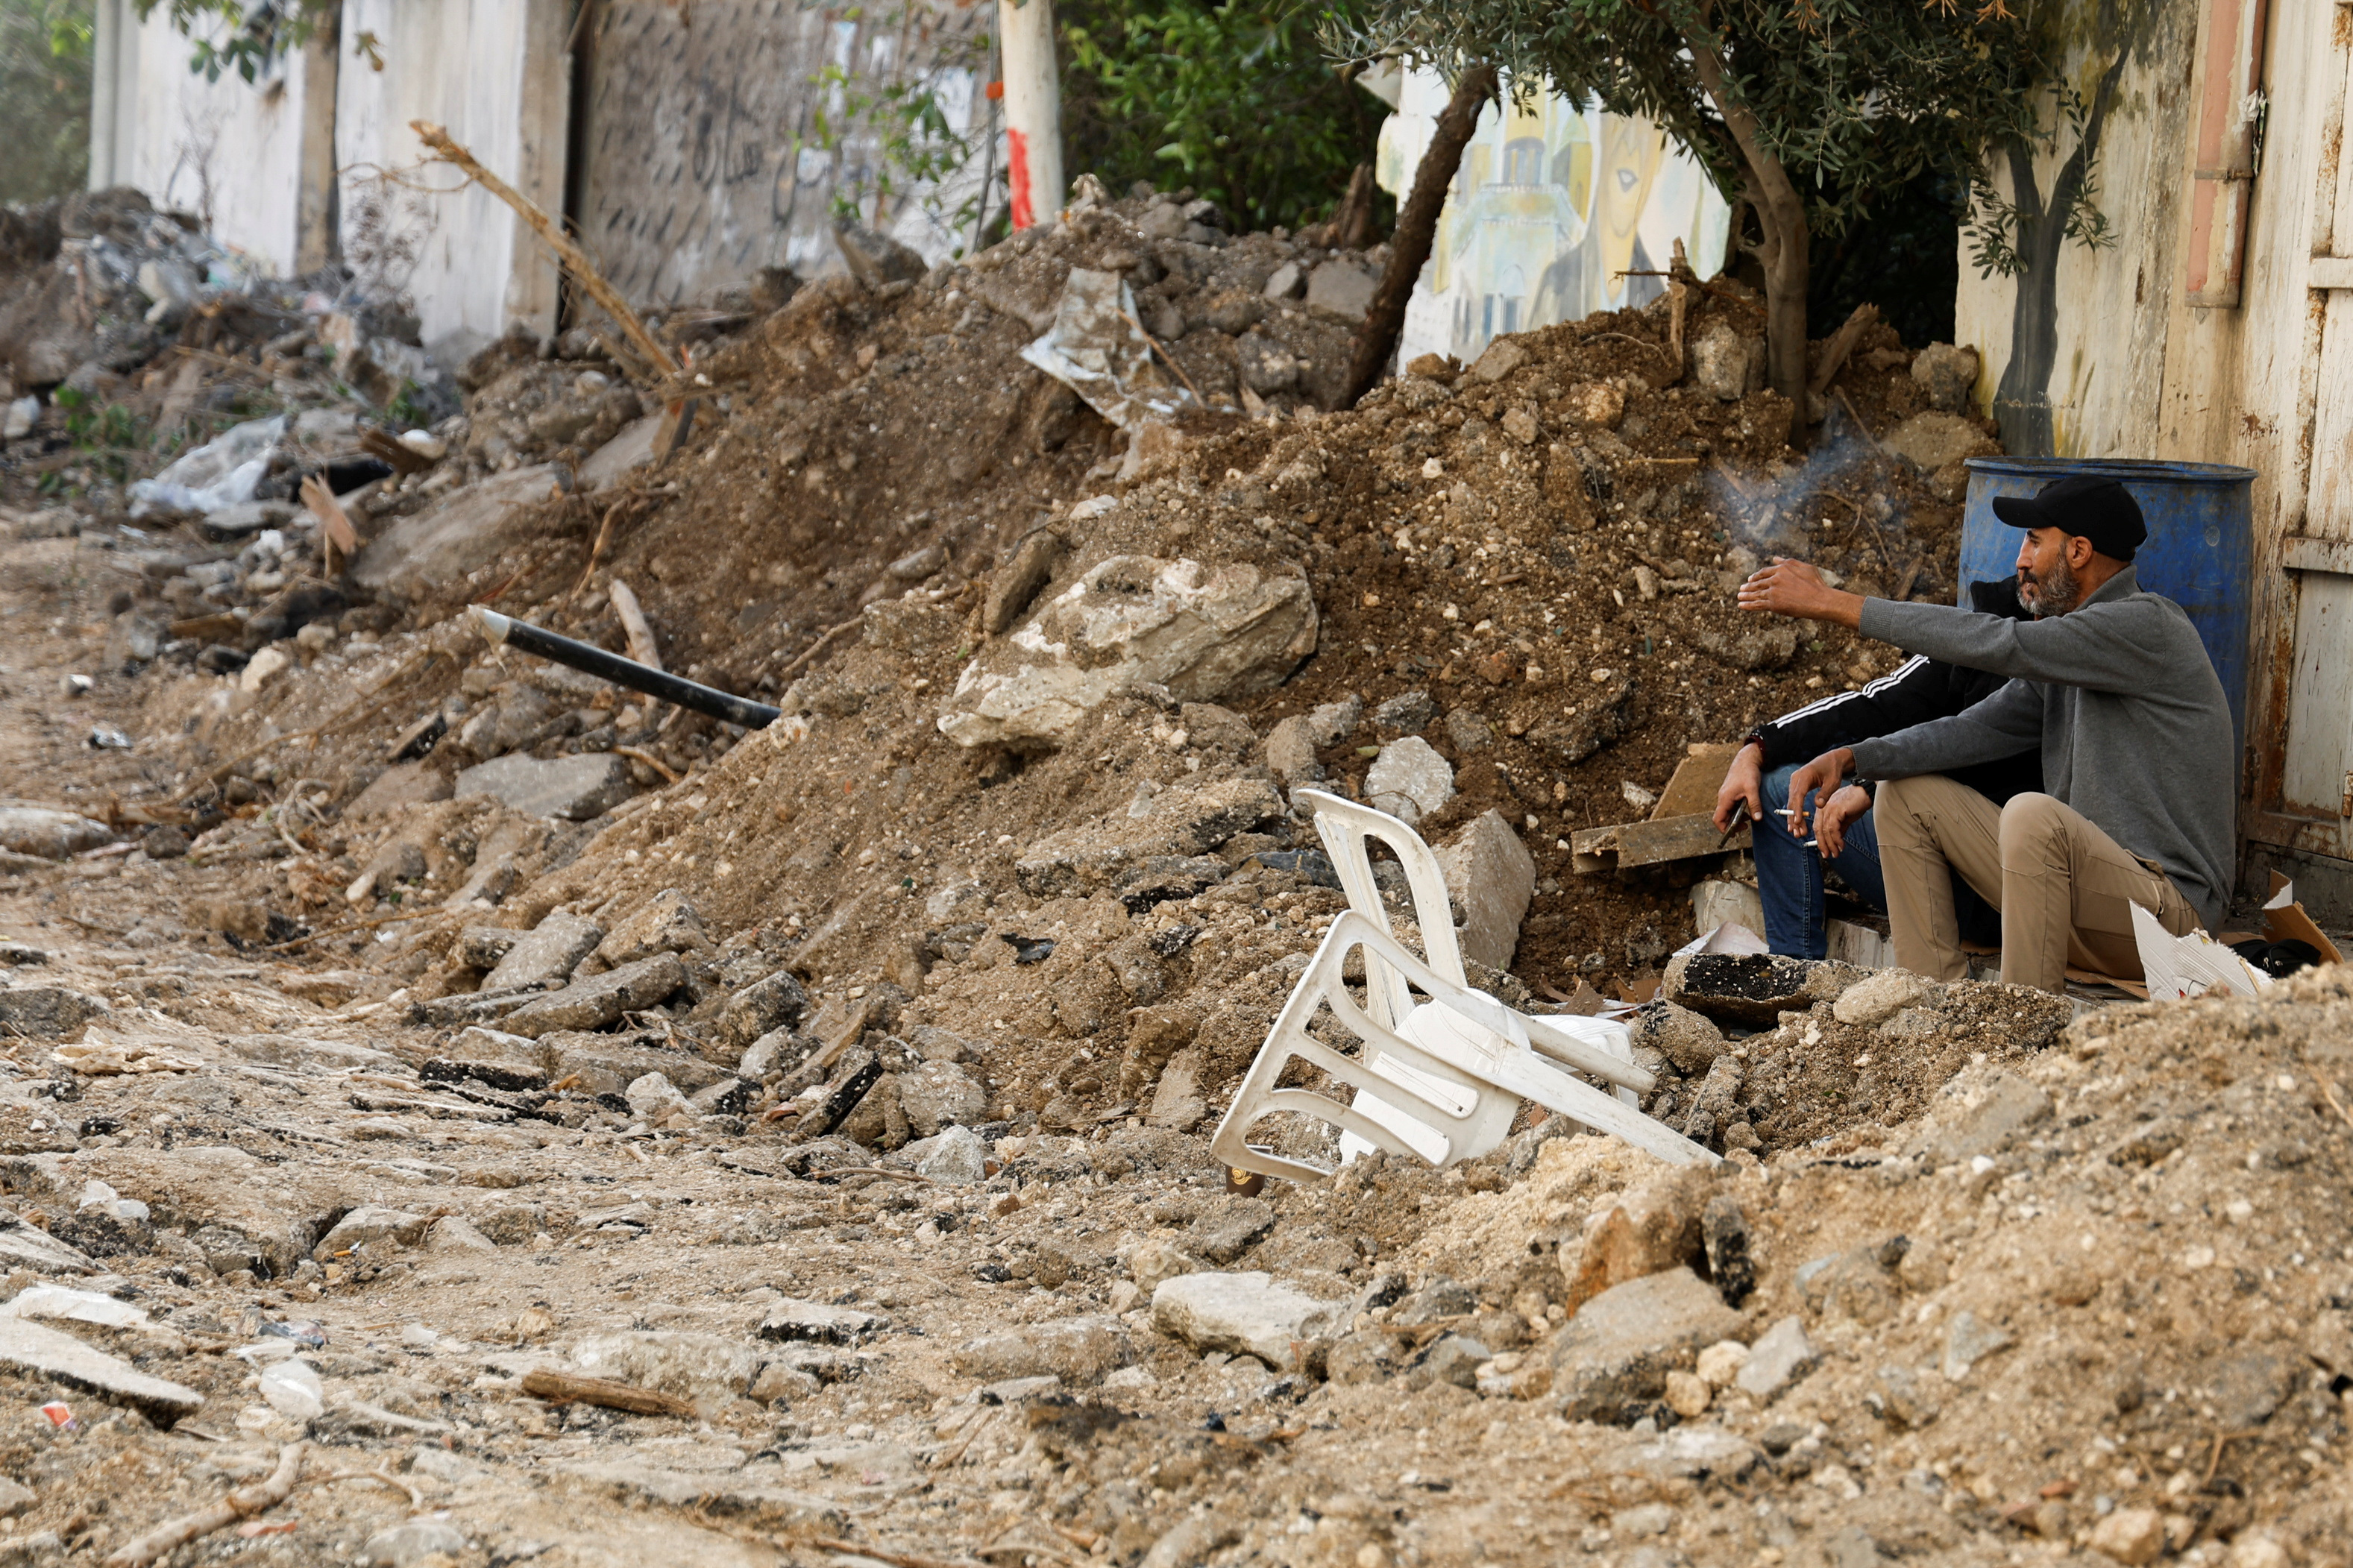 Cisjordanie : Von der Leyen favorable à des sanctions contre les colons « extrémistes »